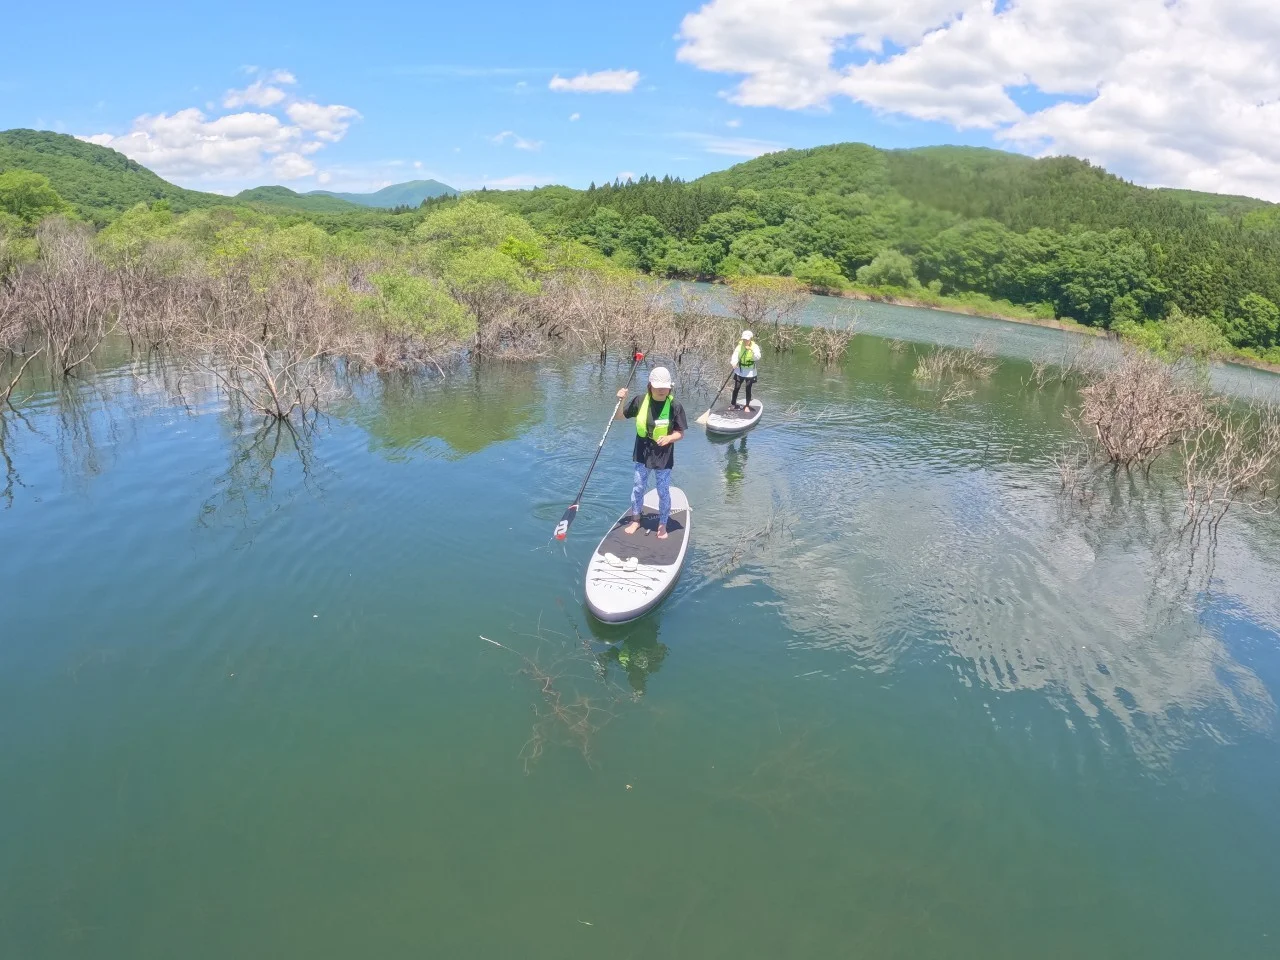 Miyagi Okura River Valley SUP experience One-day tour